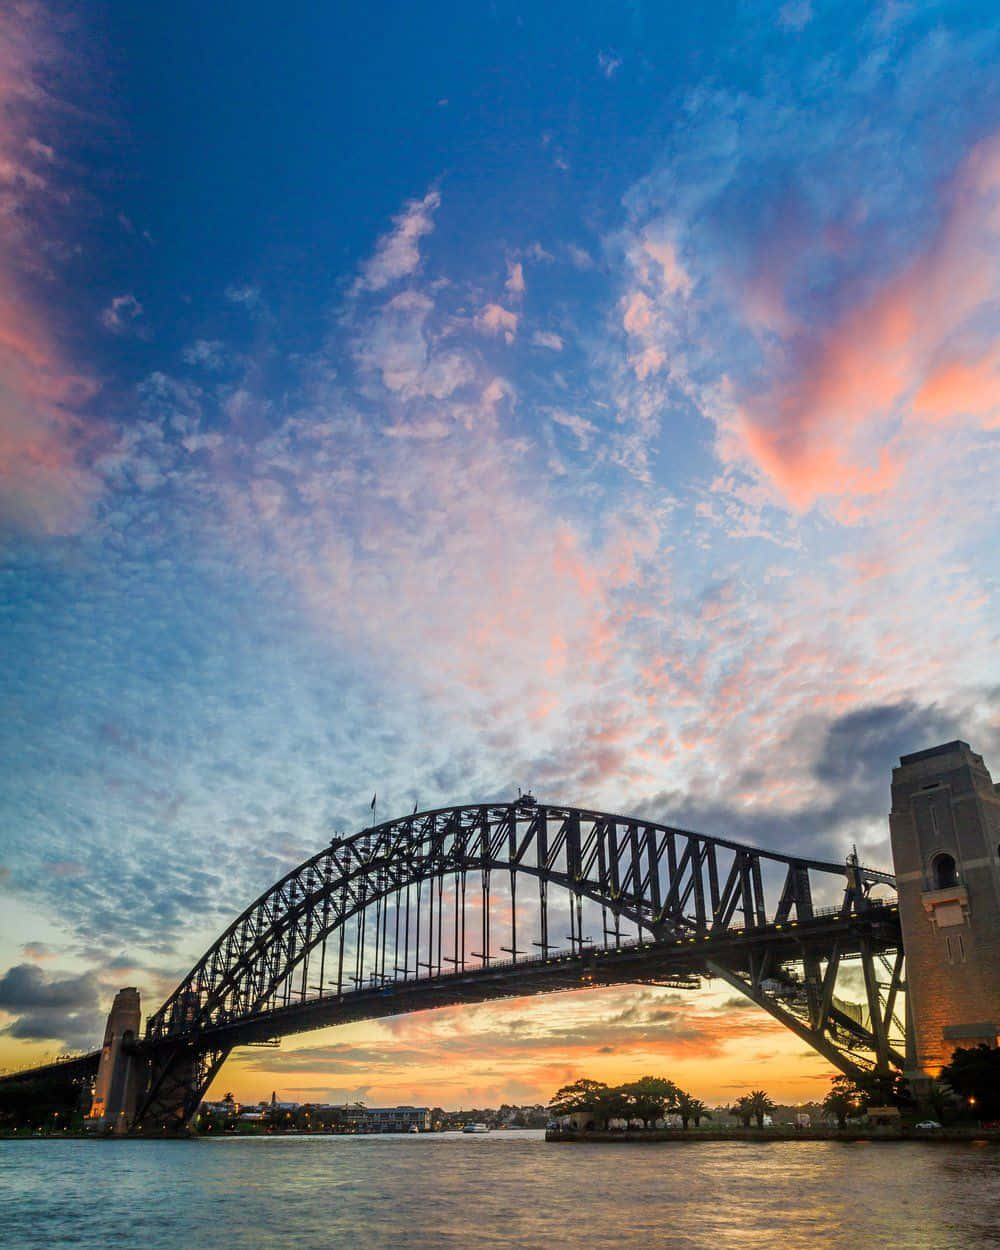 Magnificent view of the Sydney Harbour Bridge